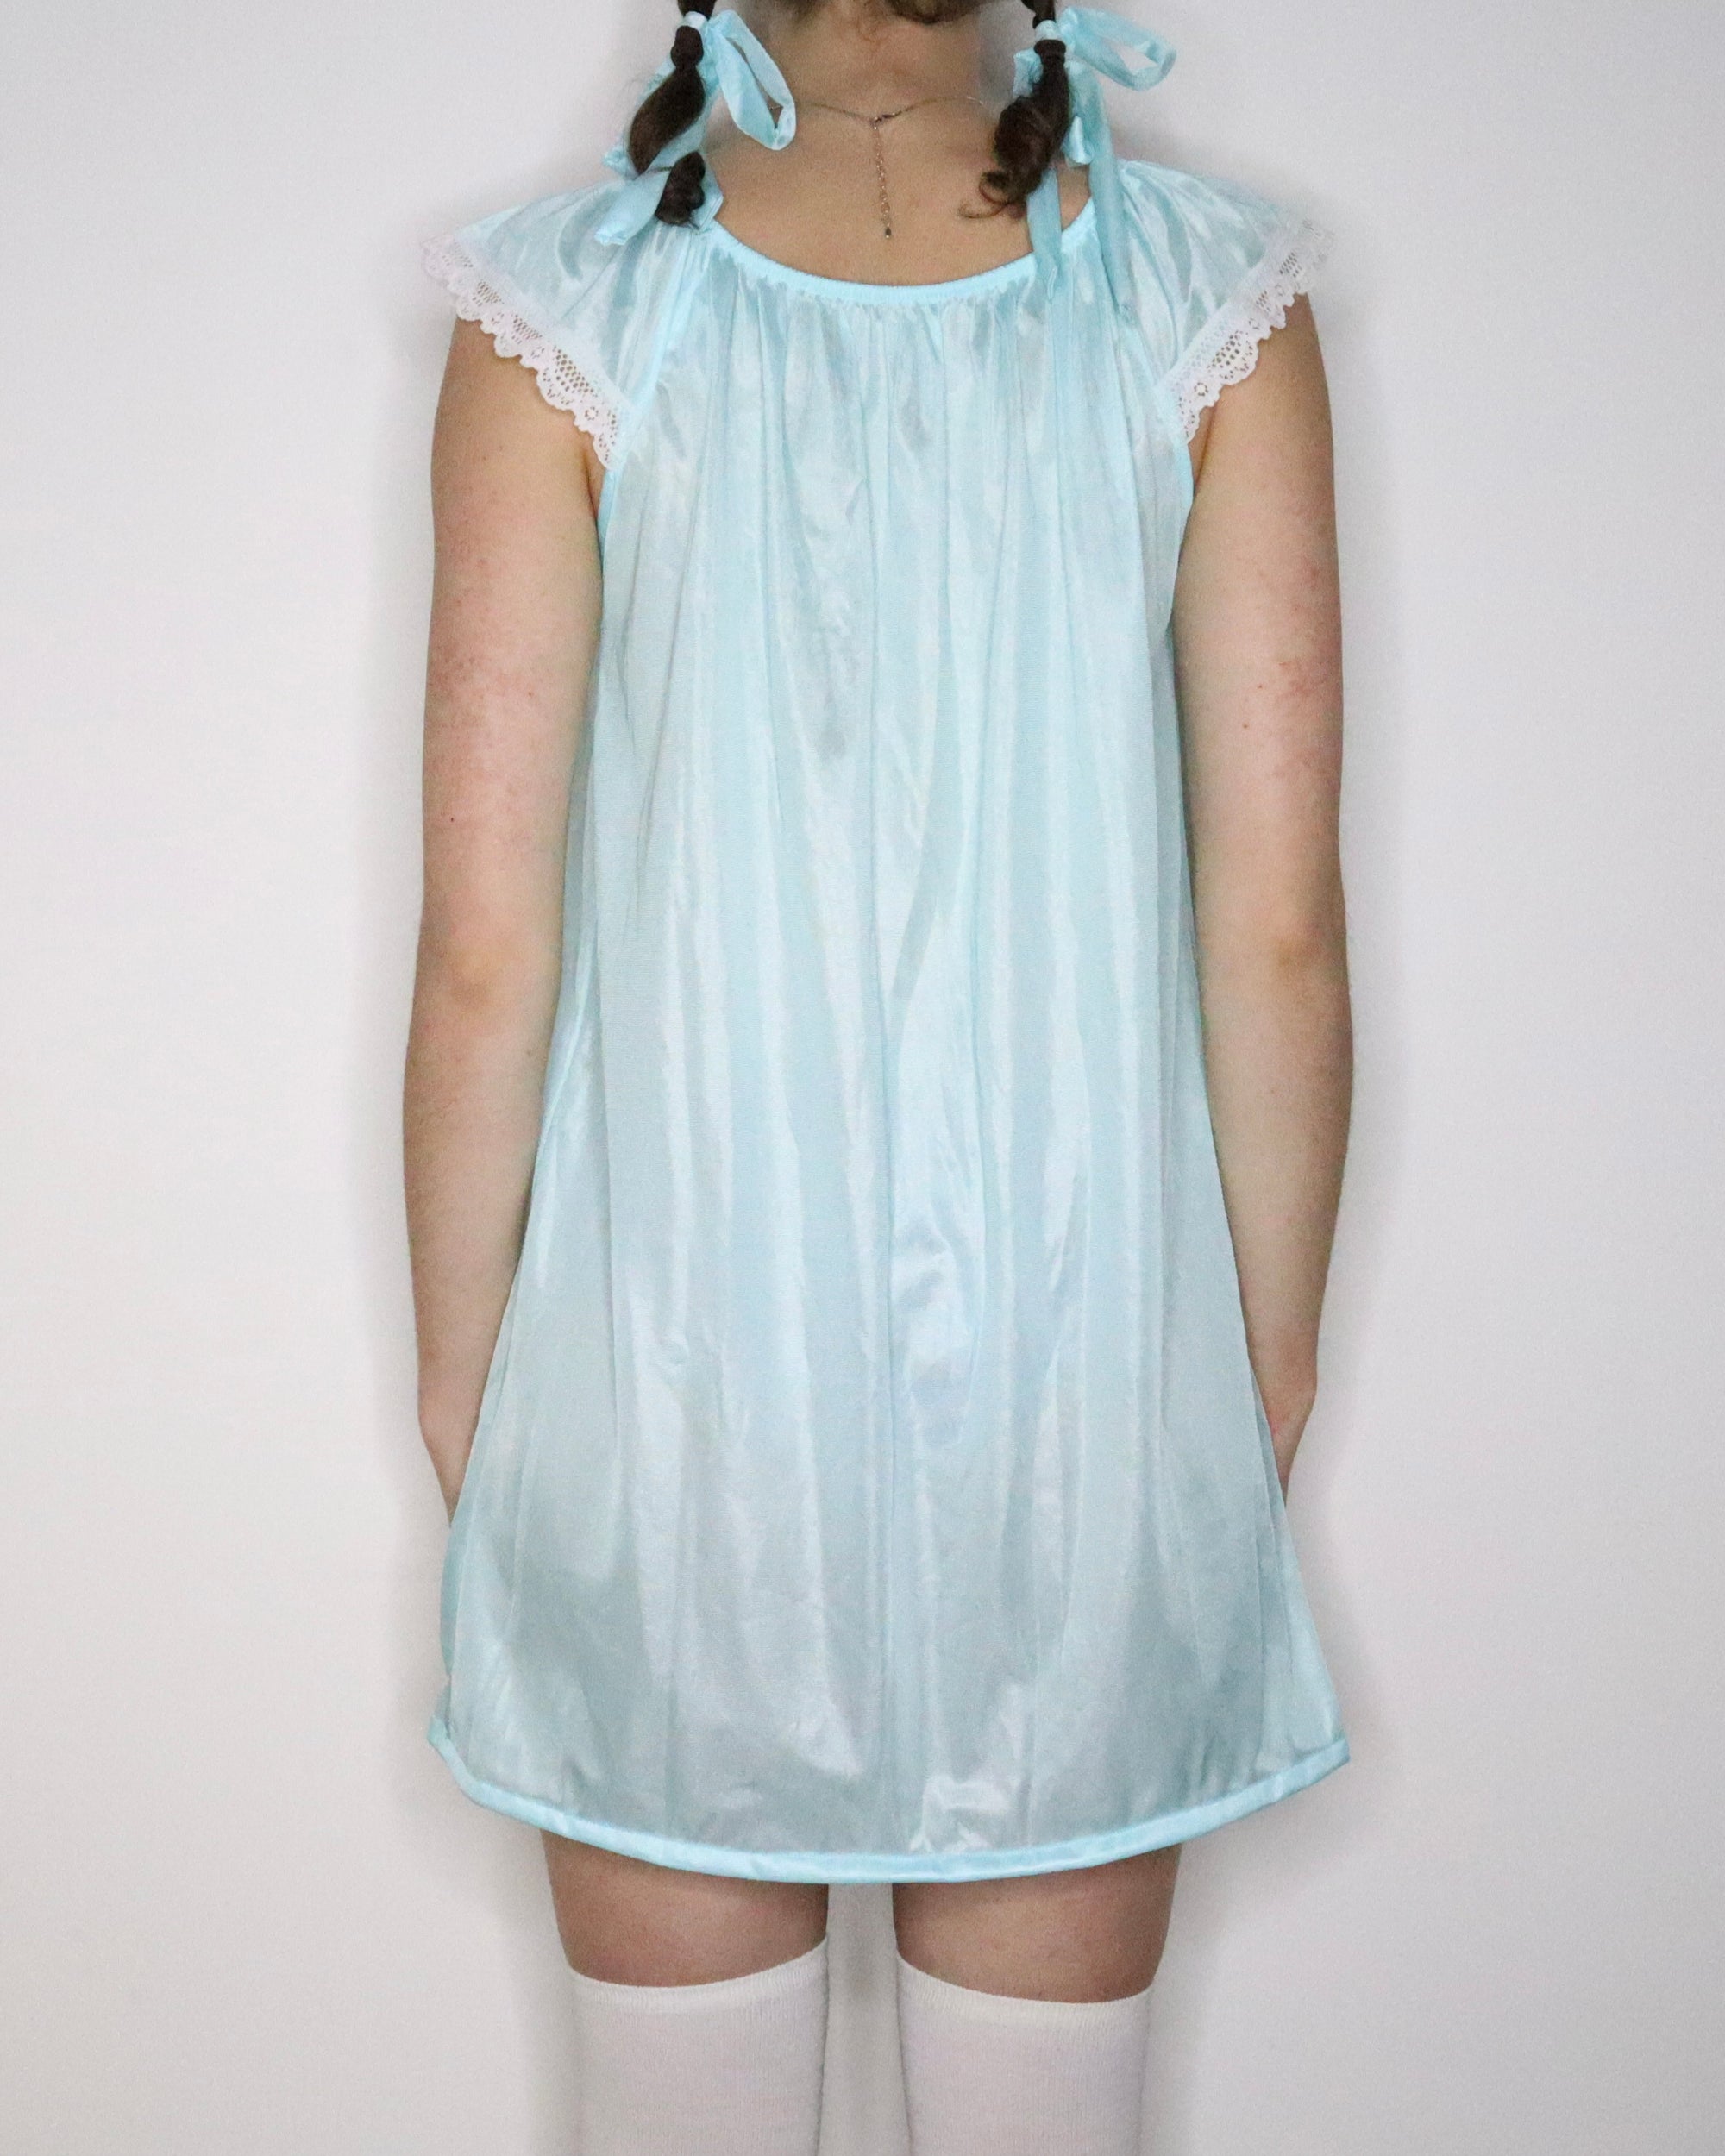 Blue Babydoll Nightgown (Medium) 